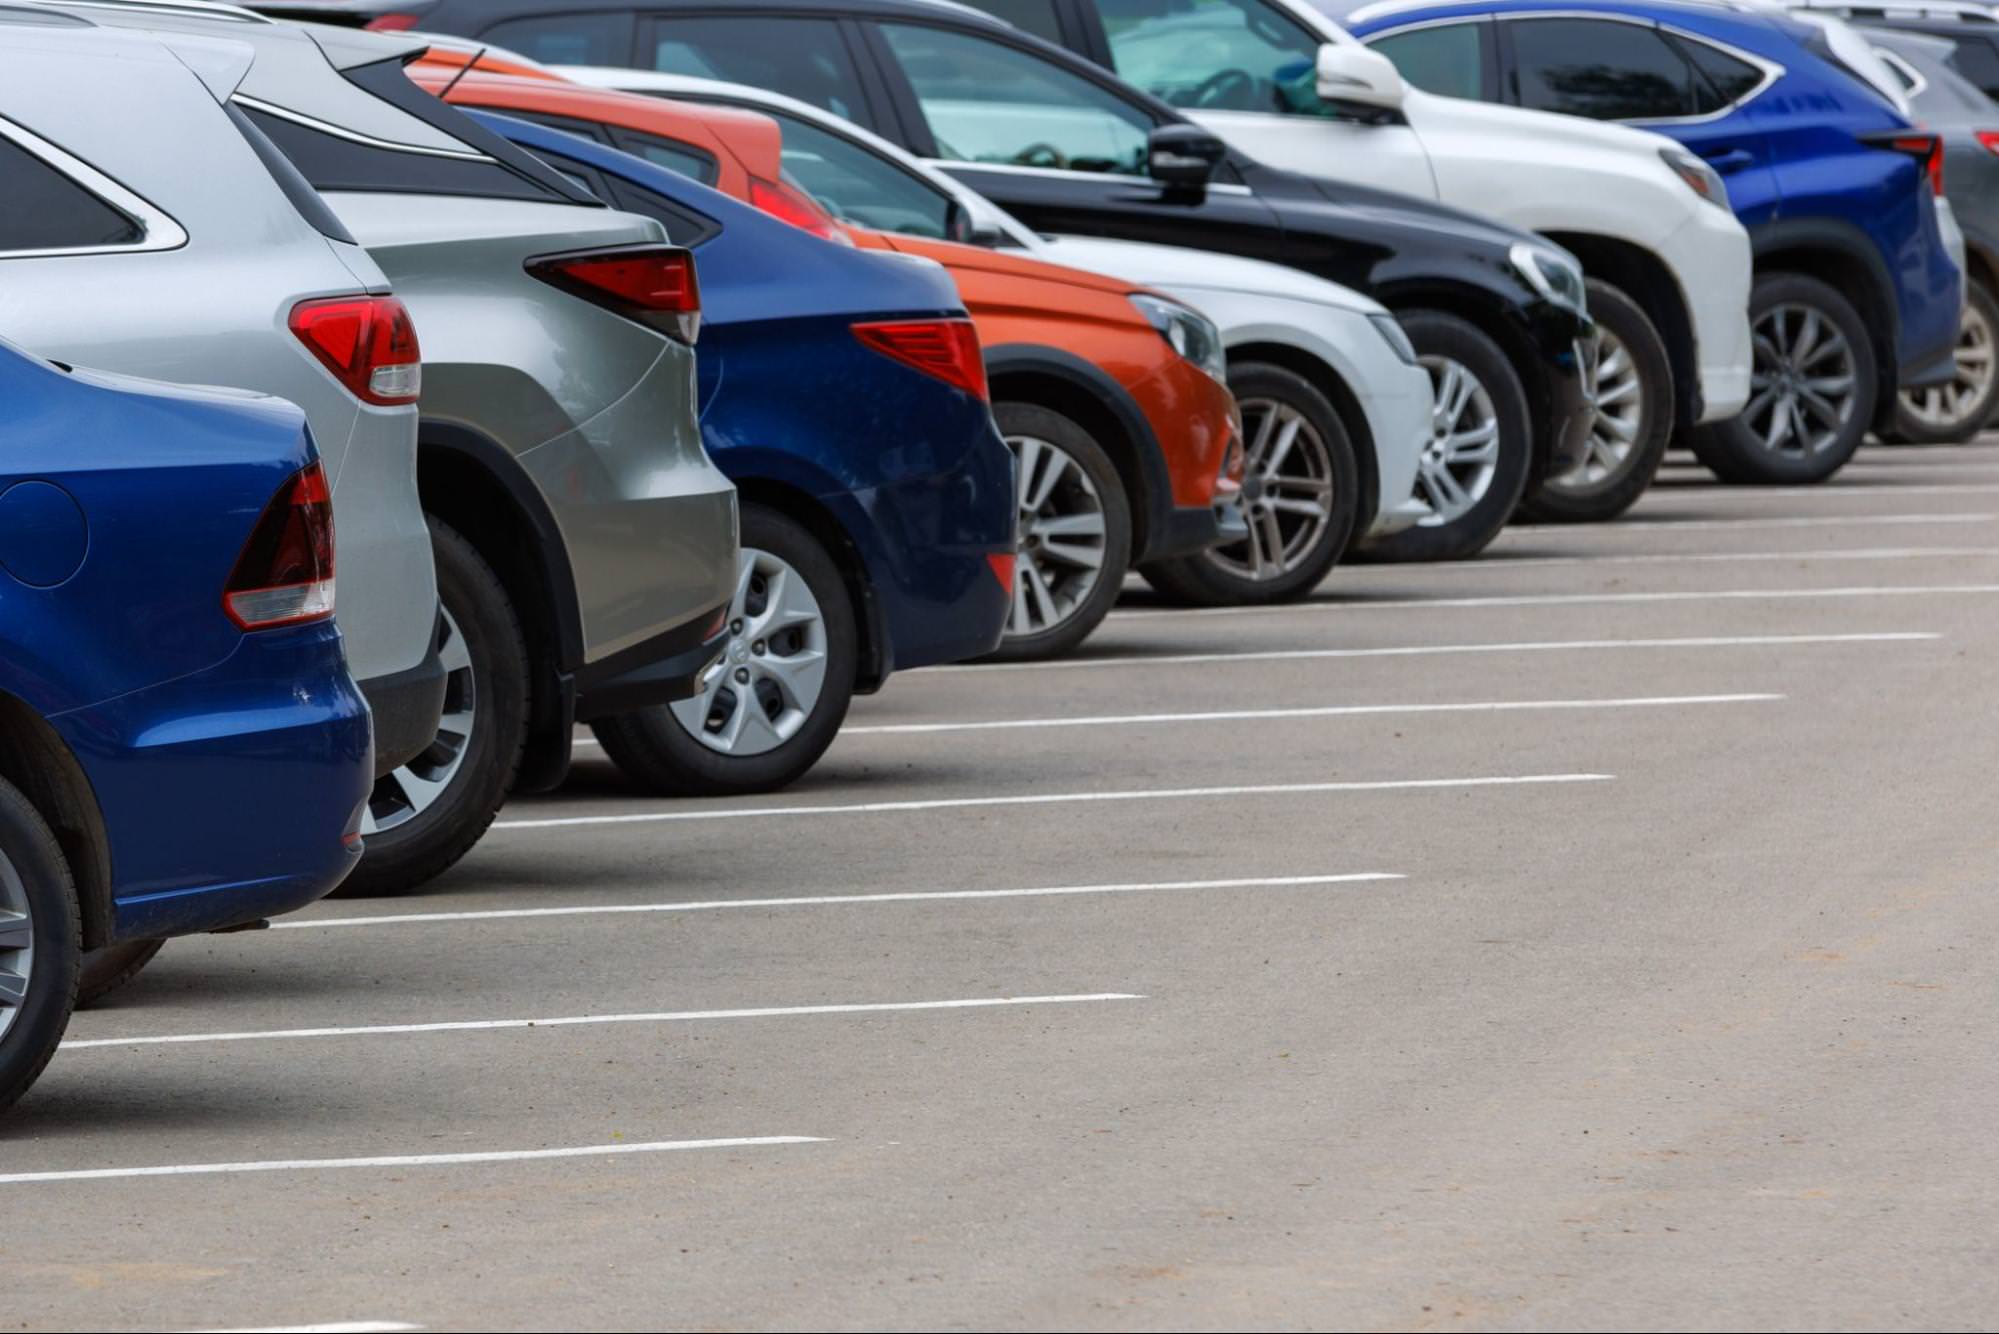 Rząd różnych kolorów samochodów na asfaltowym parkingu